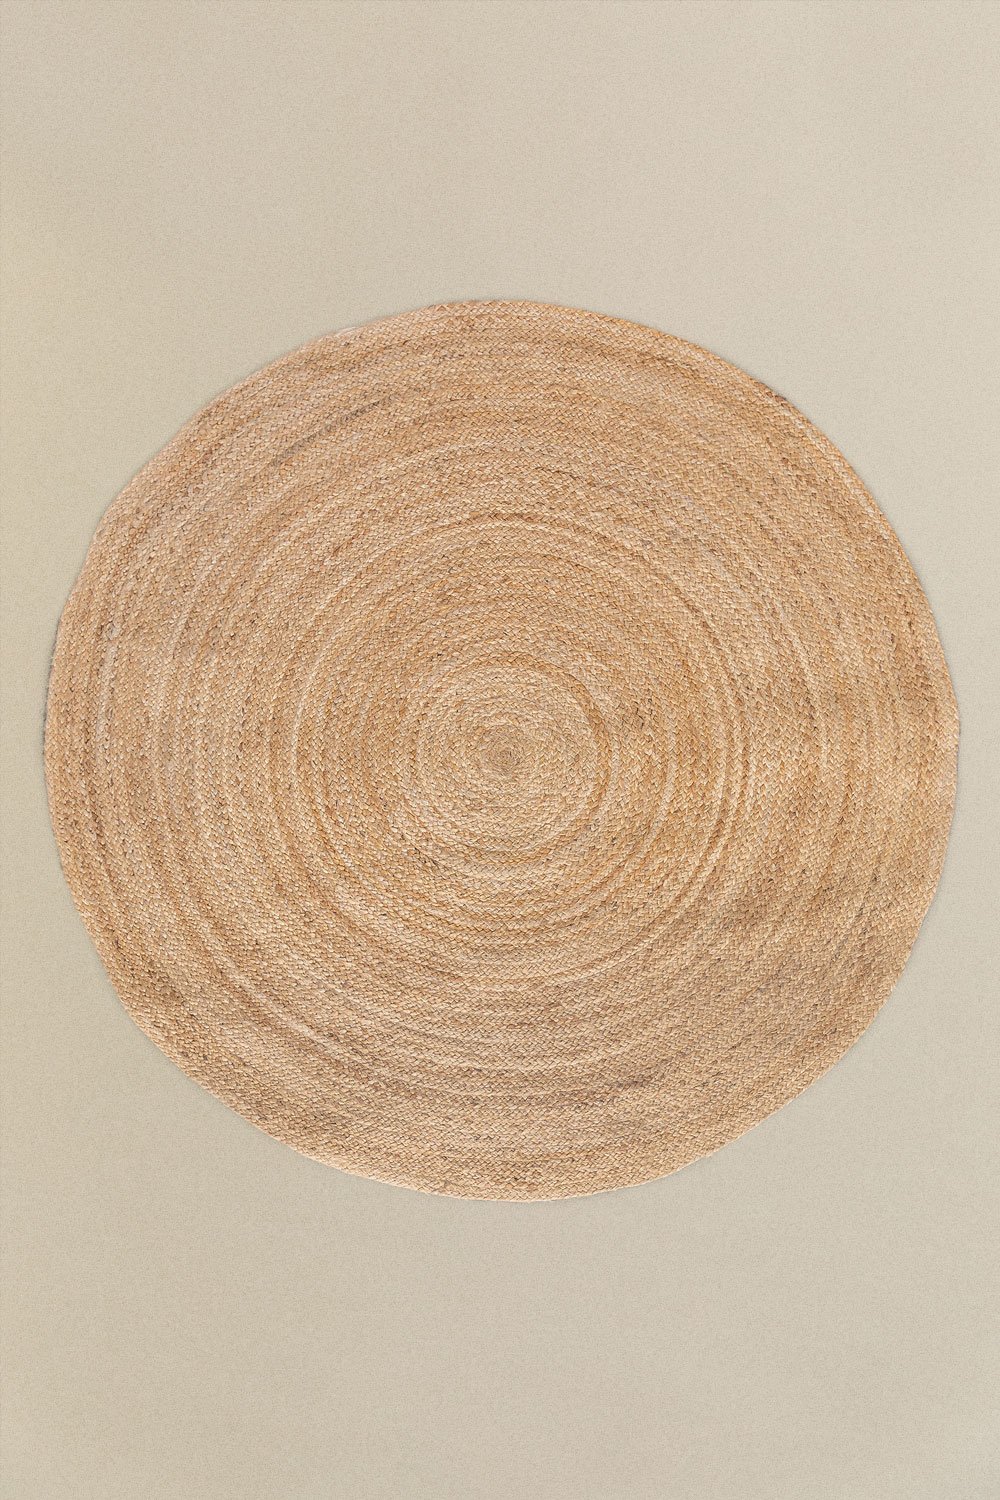 Tapis de jute rond (Ø145 cm) Neferet, image de la galerie 1